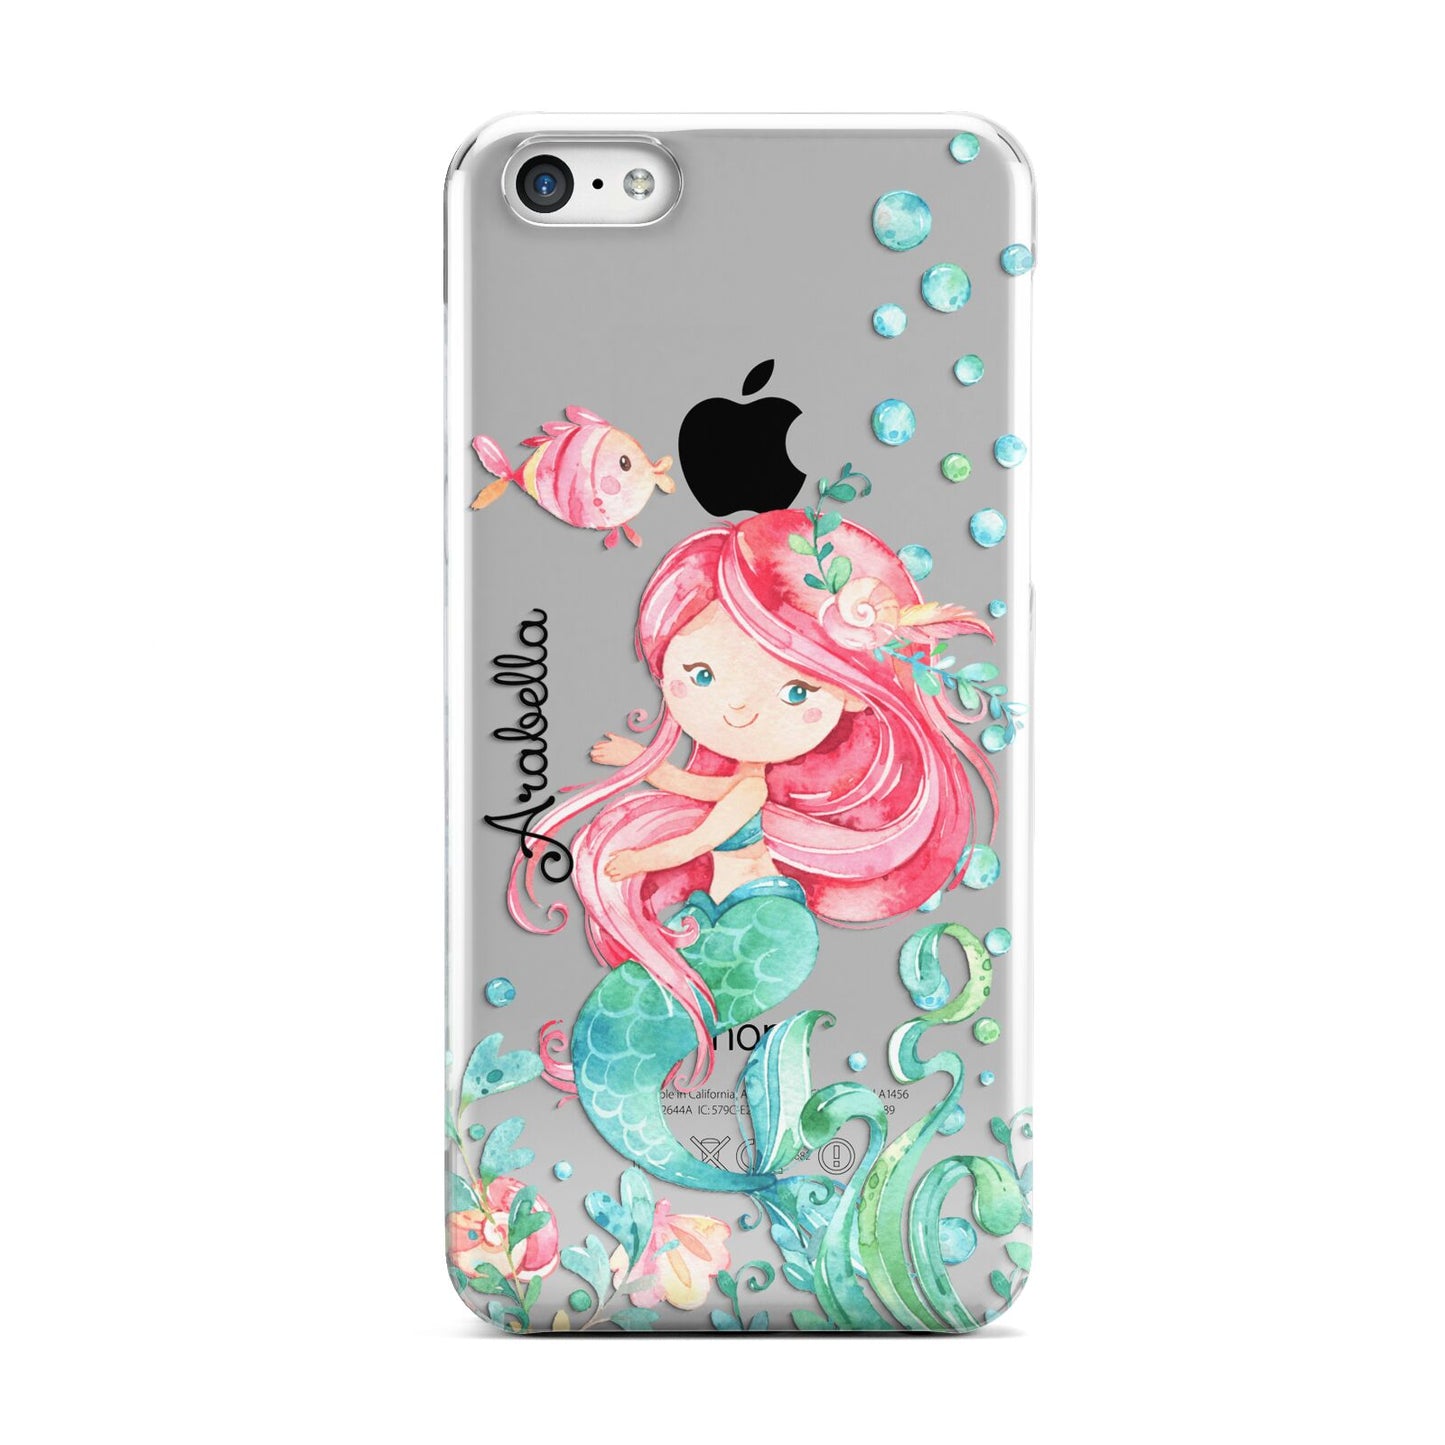 Personalised Mermaid Apple iPhone 5c Case